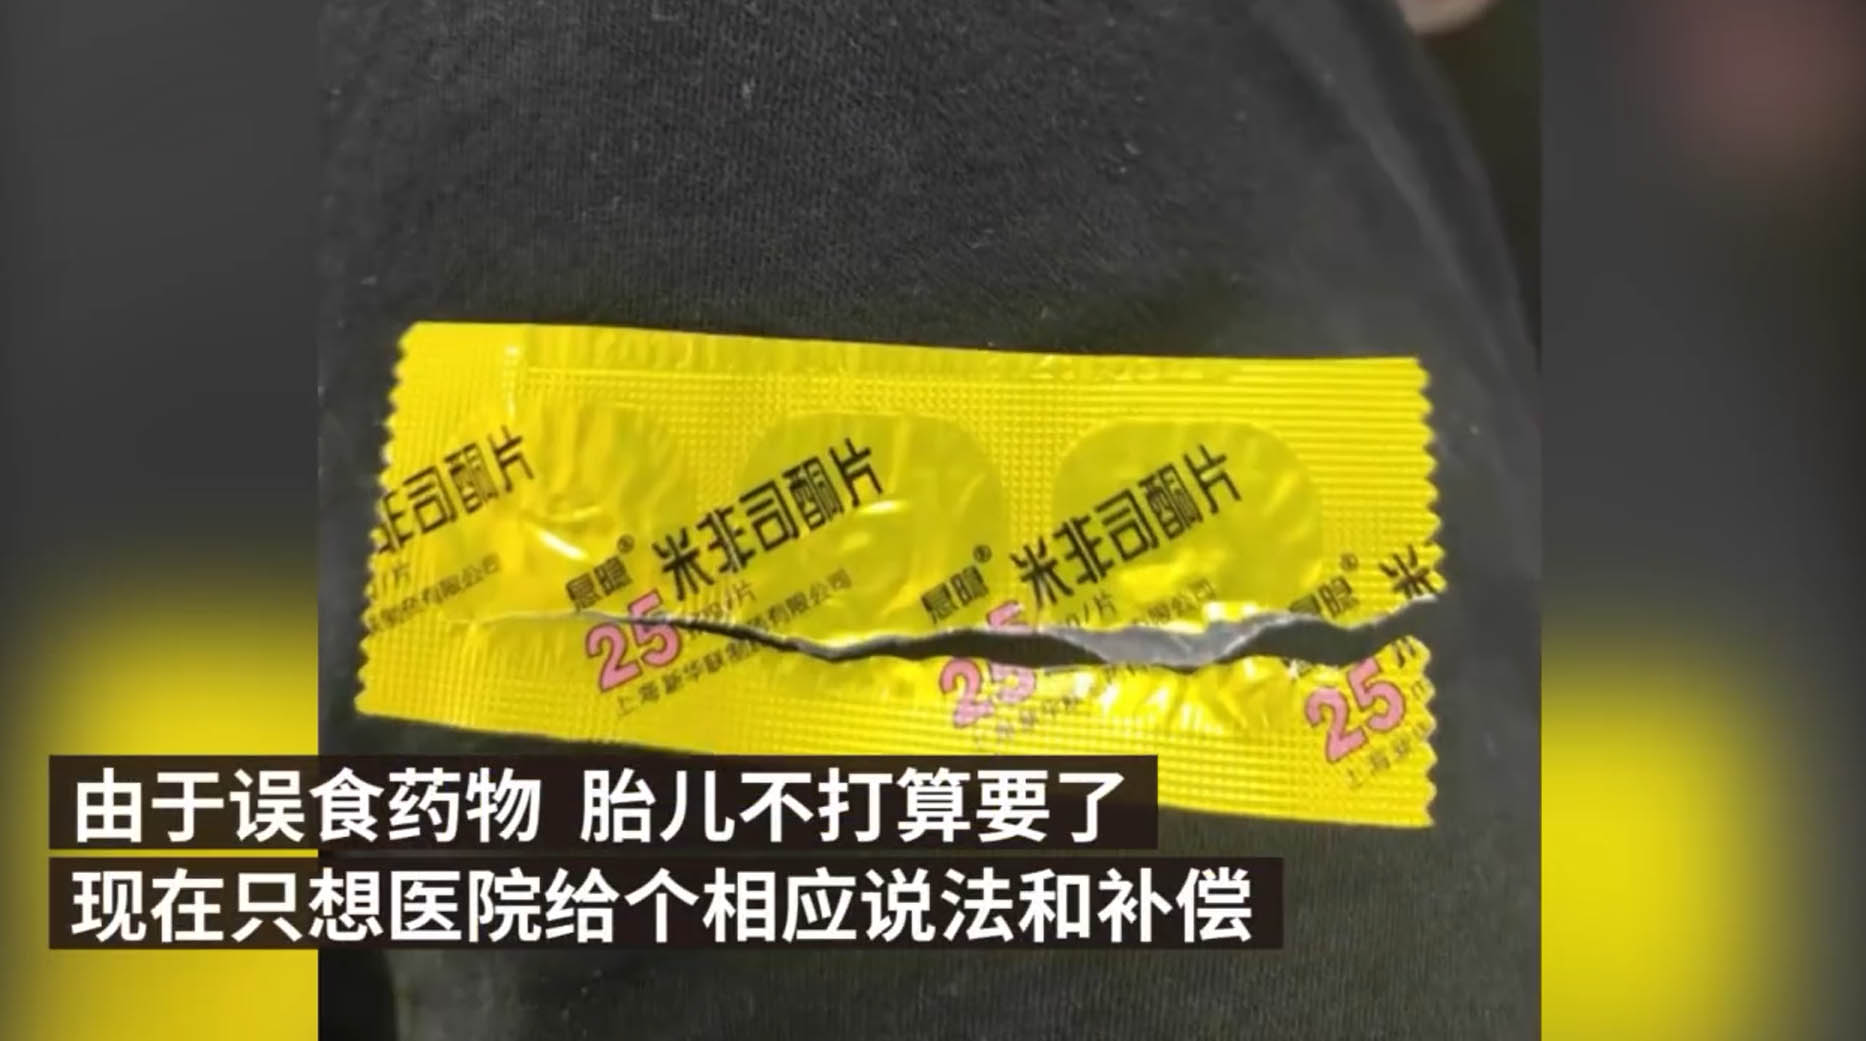 肥东县某医院将保胎药错发成打胎药护士被停职